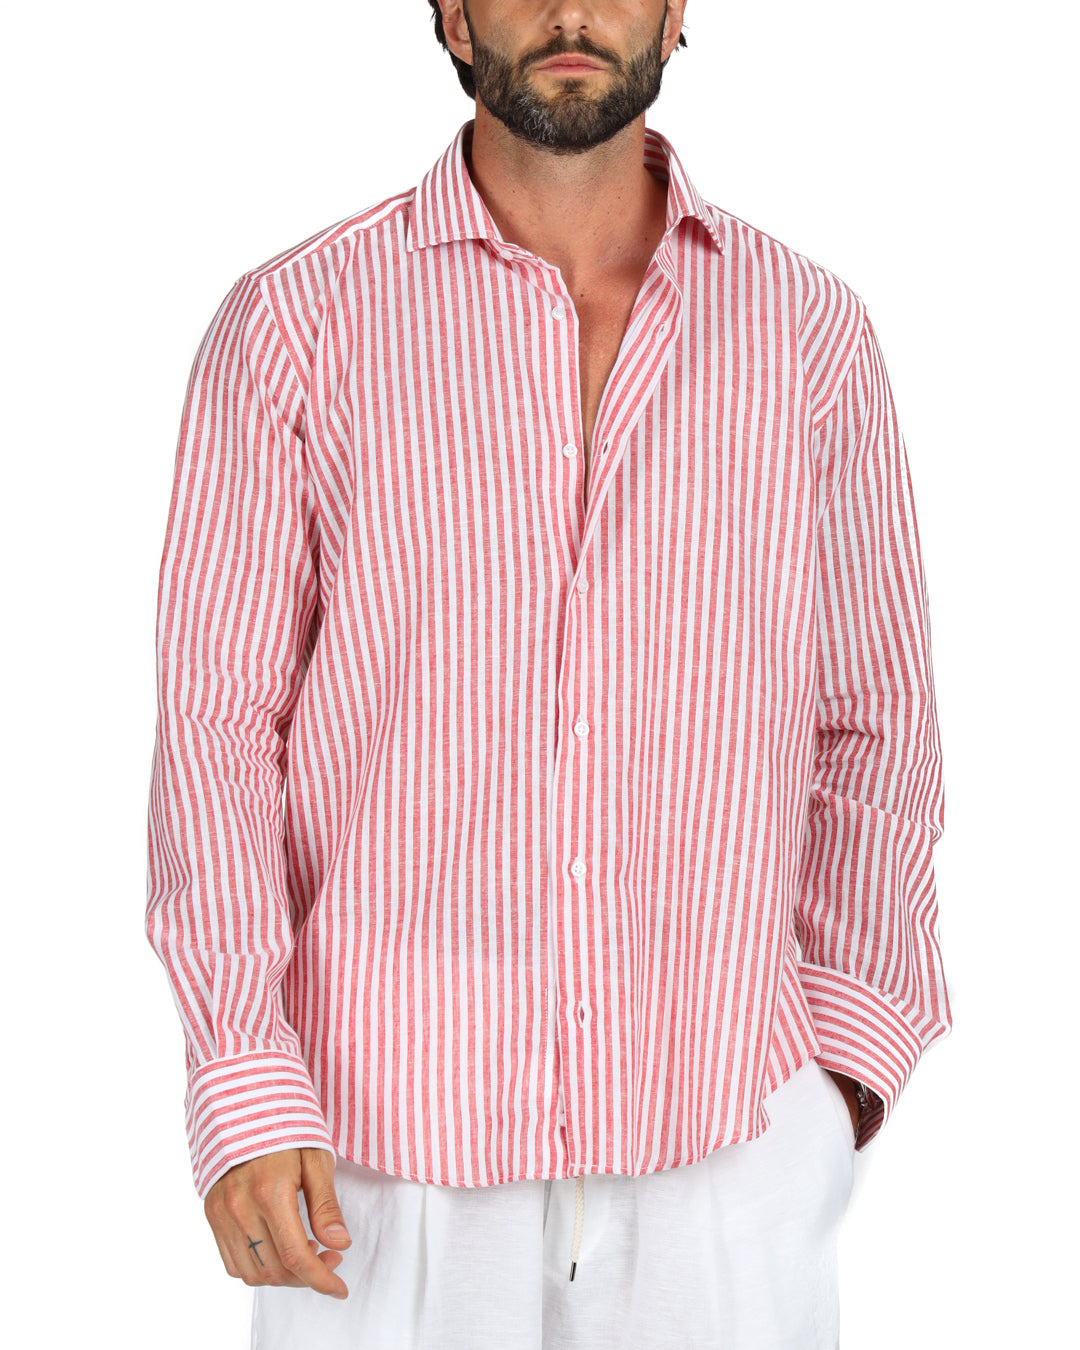 Ischia - Camicia classica righe strette rossa in lino